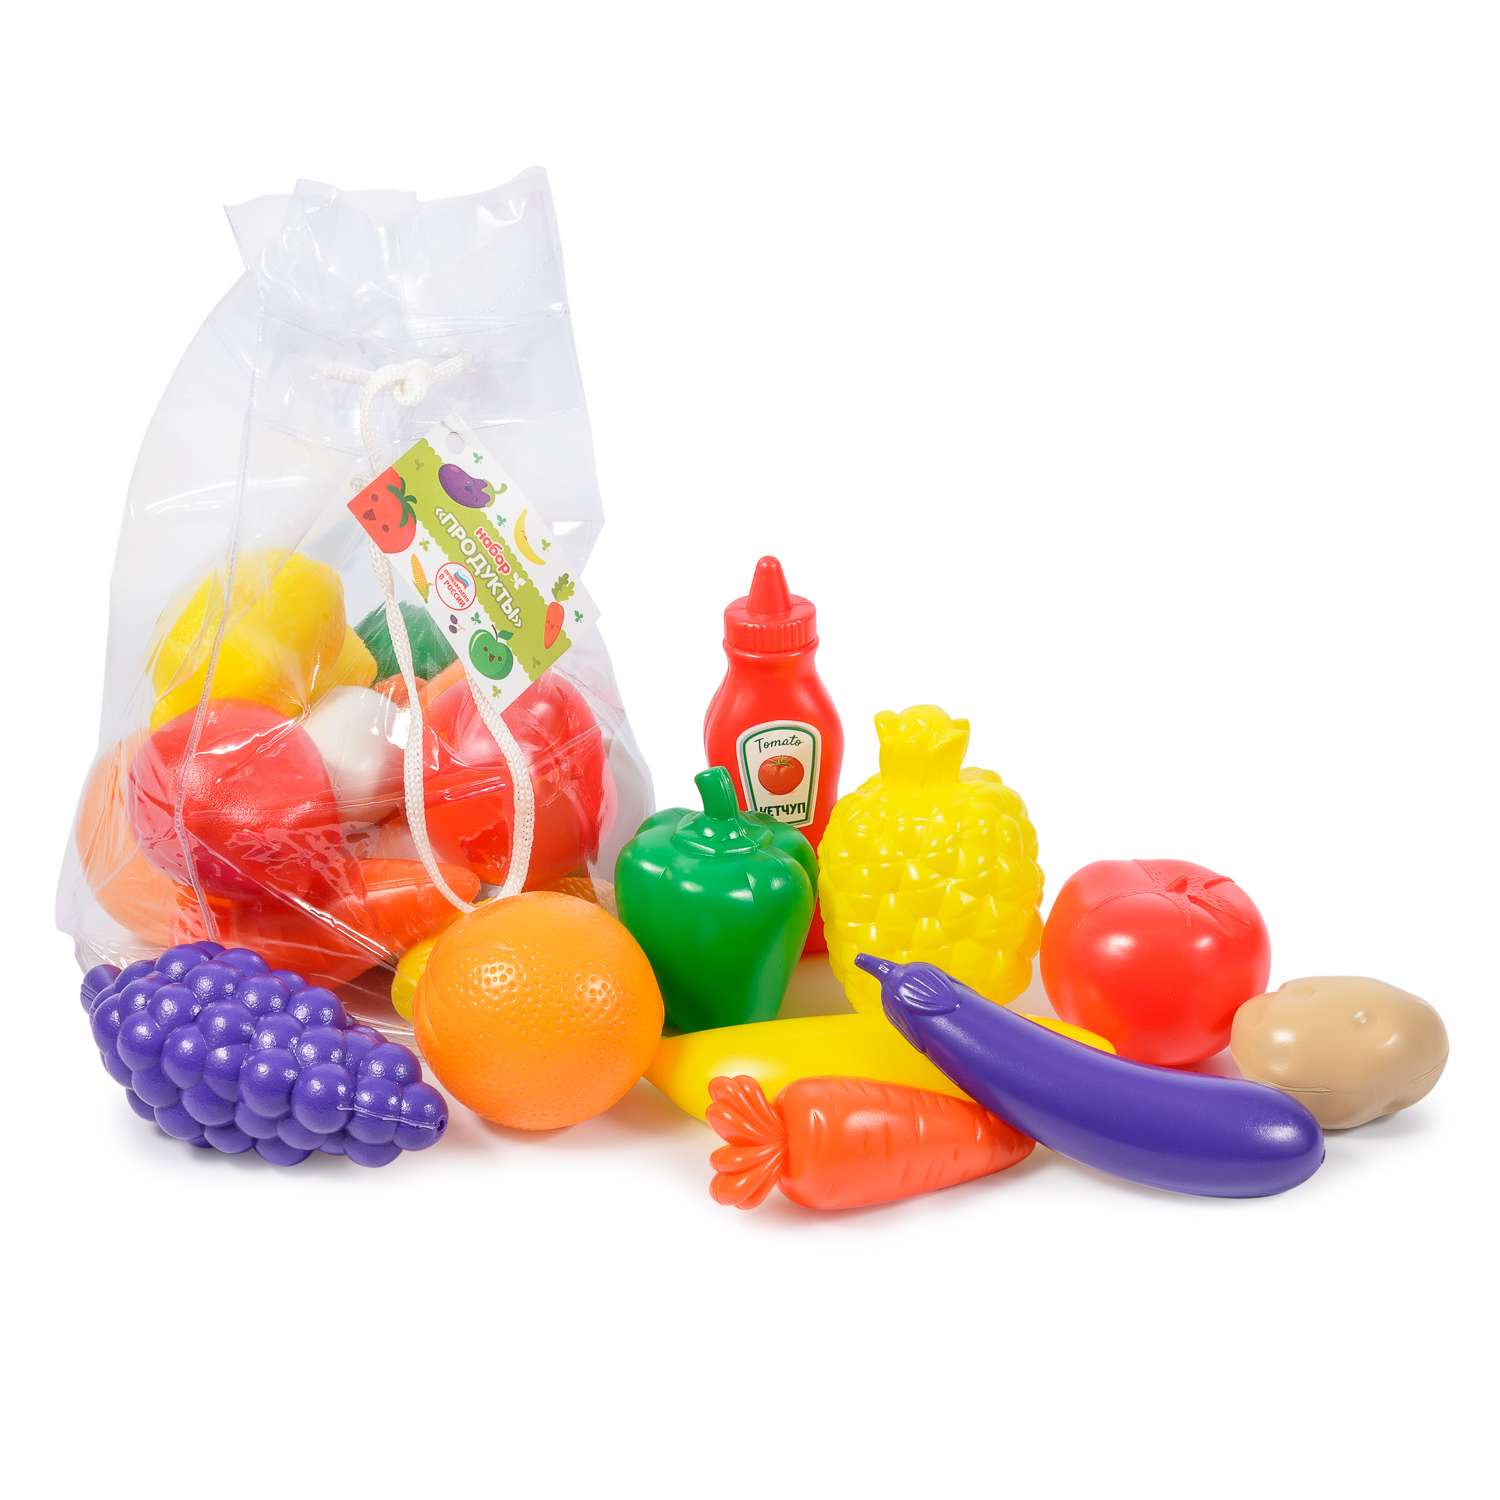 Игровой набор детский Green Plast игрушечные продукты в сумочке 22 элемента - фото 1